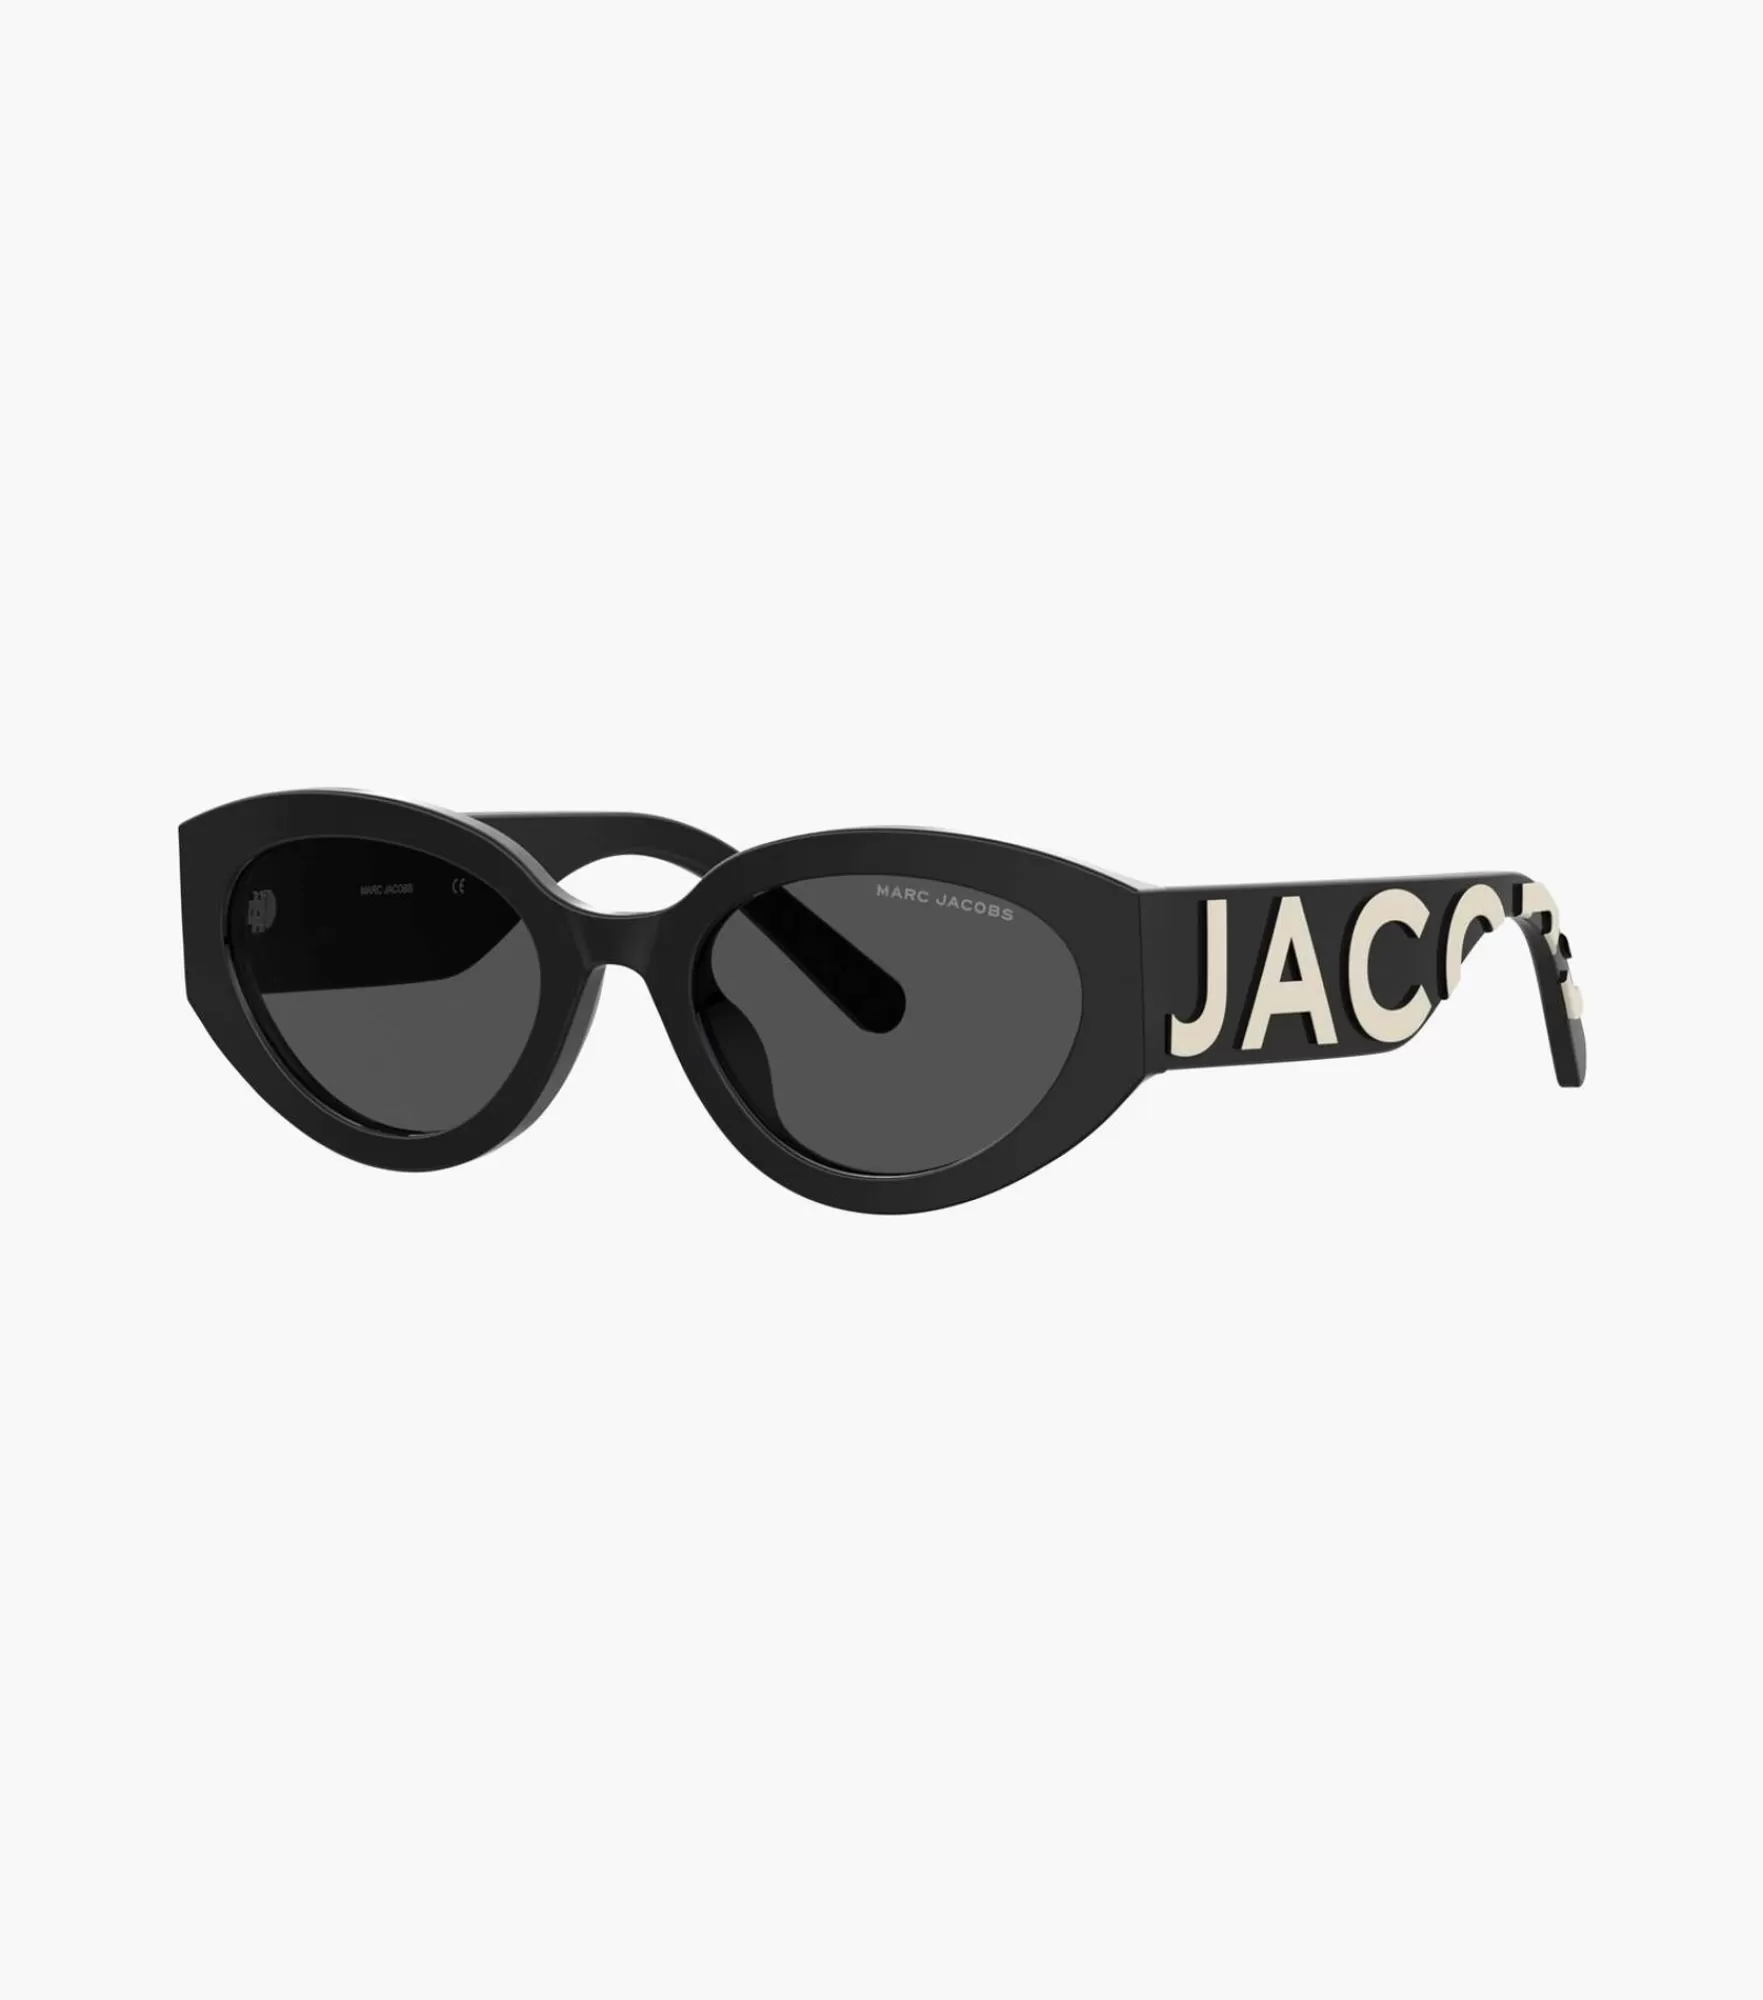 Marc Jacobs The Oval Sunglasses | Lunettes De Soleil